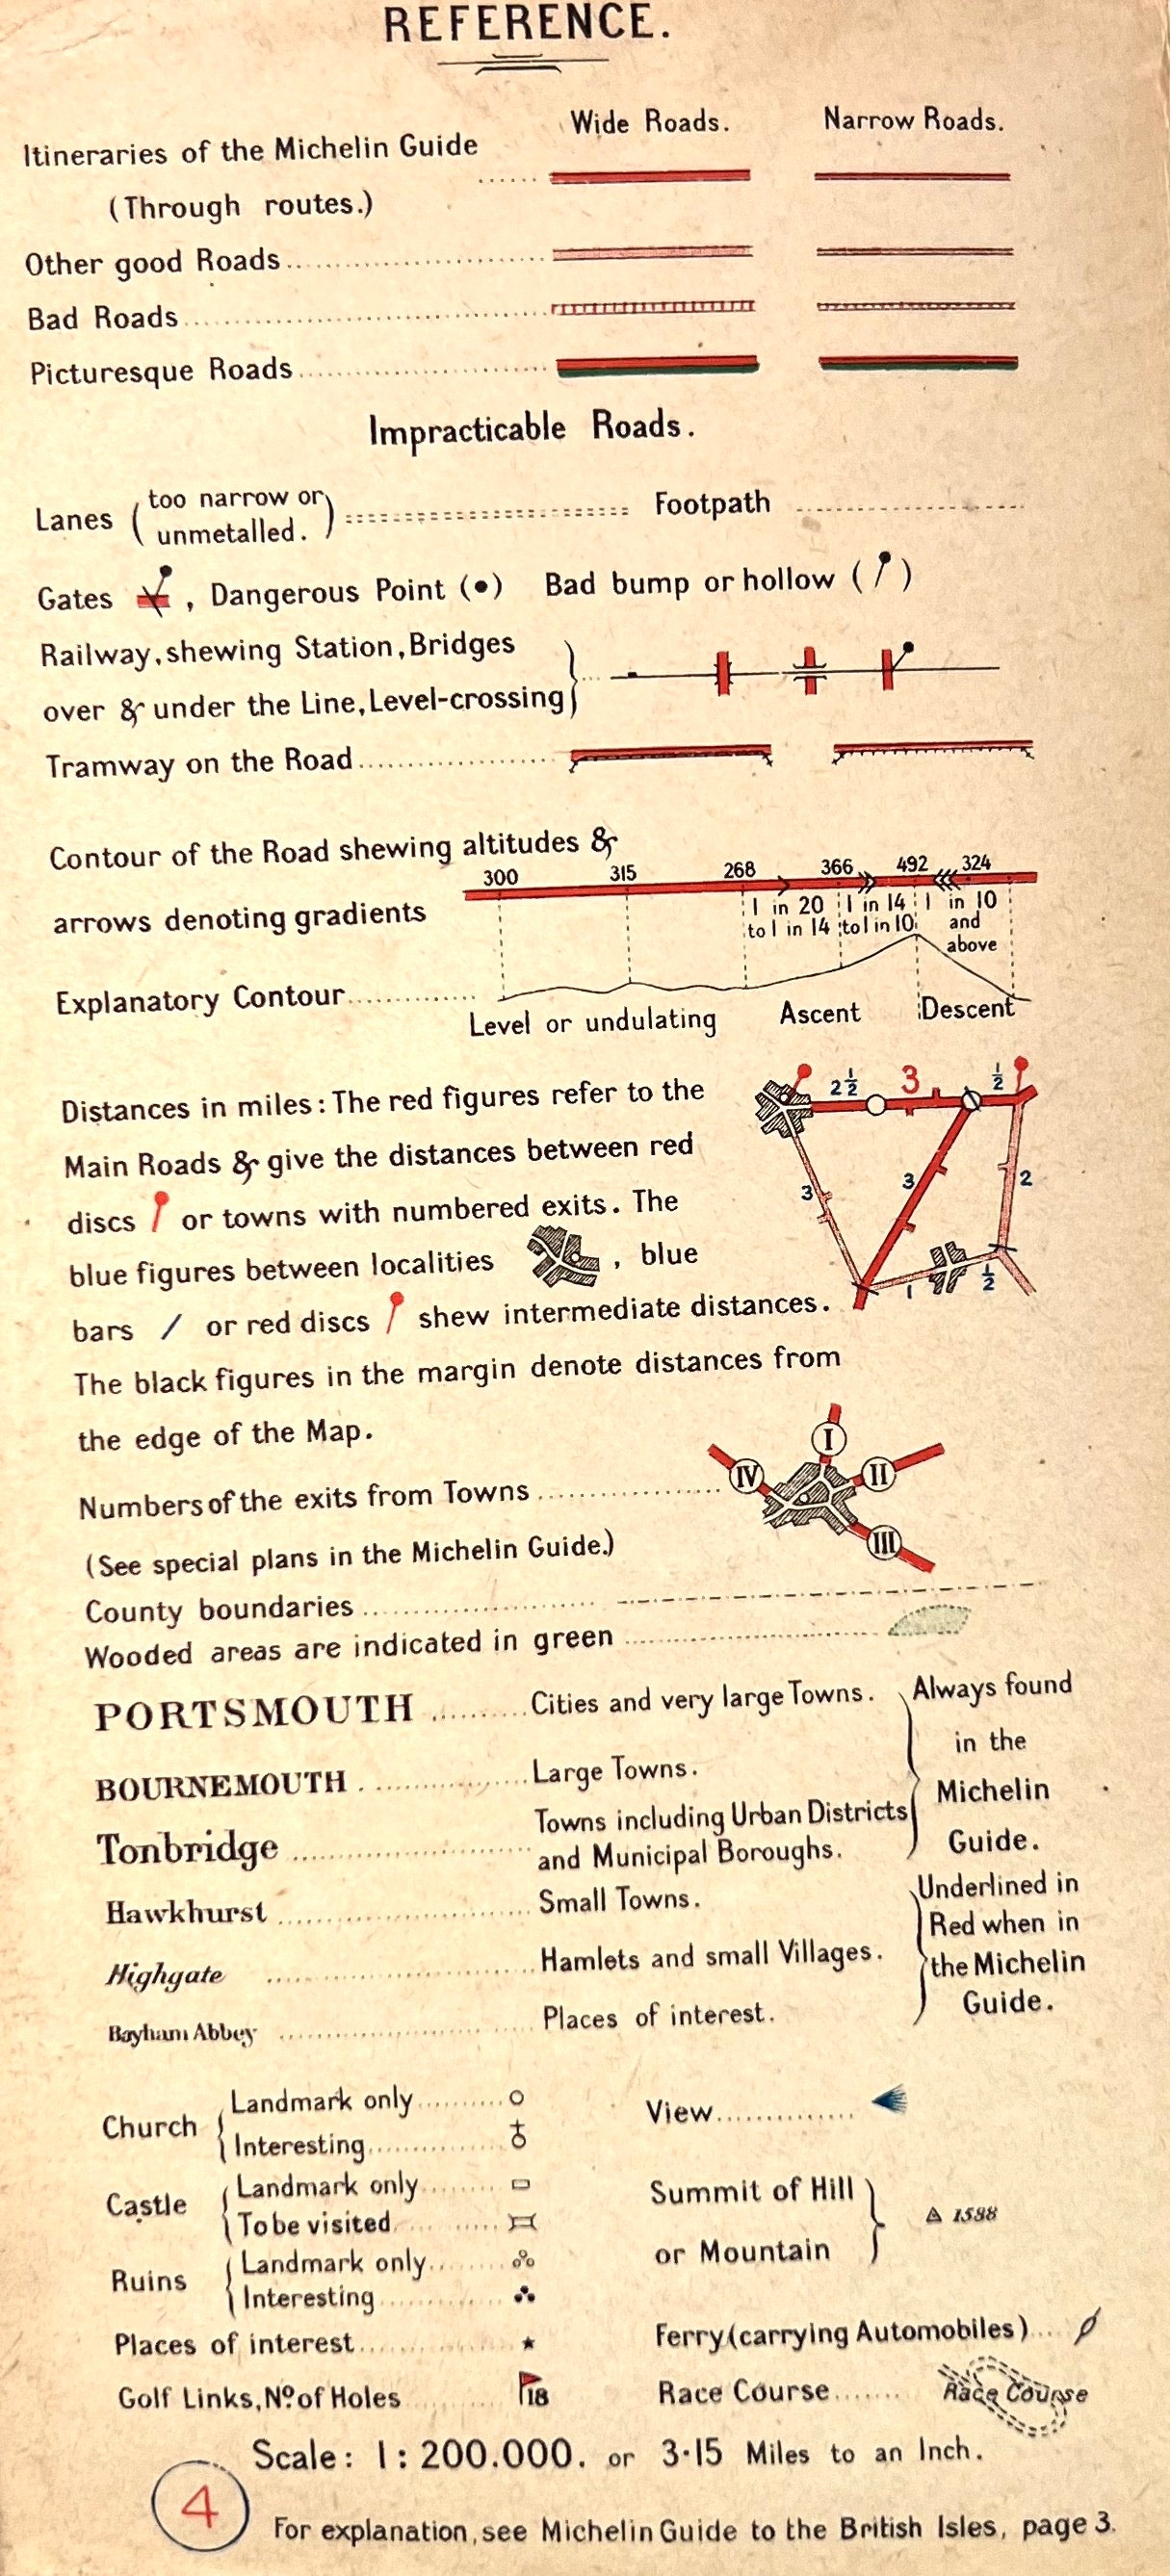 1920s Michelin Map of HAWICK - NEWCASTLE (Sheet 8)